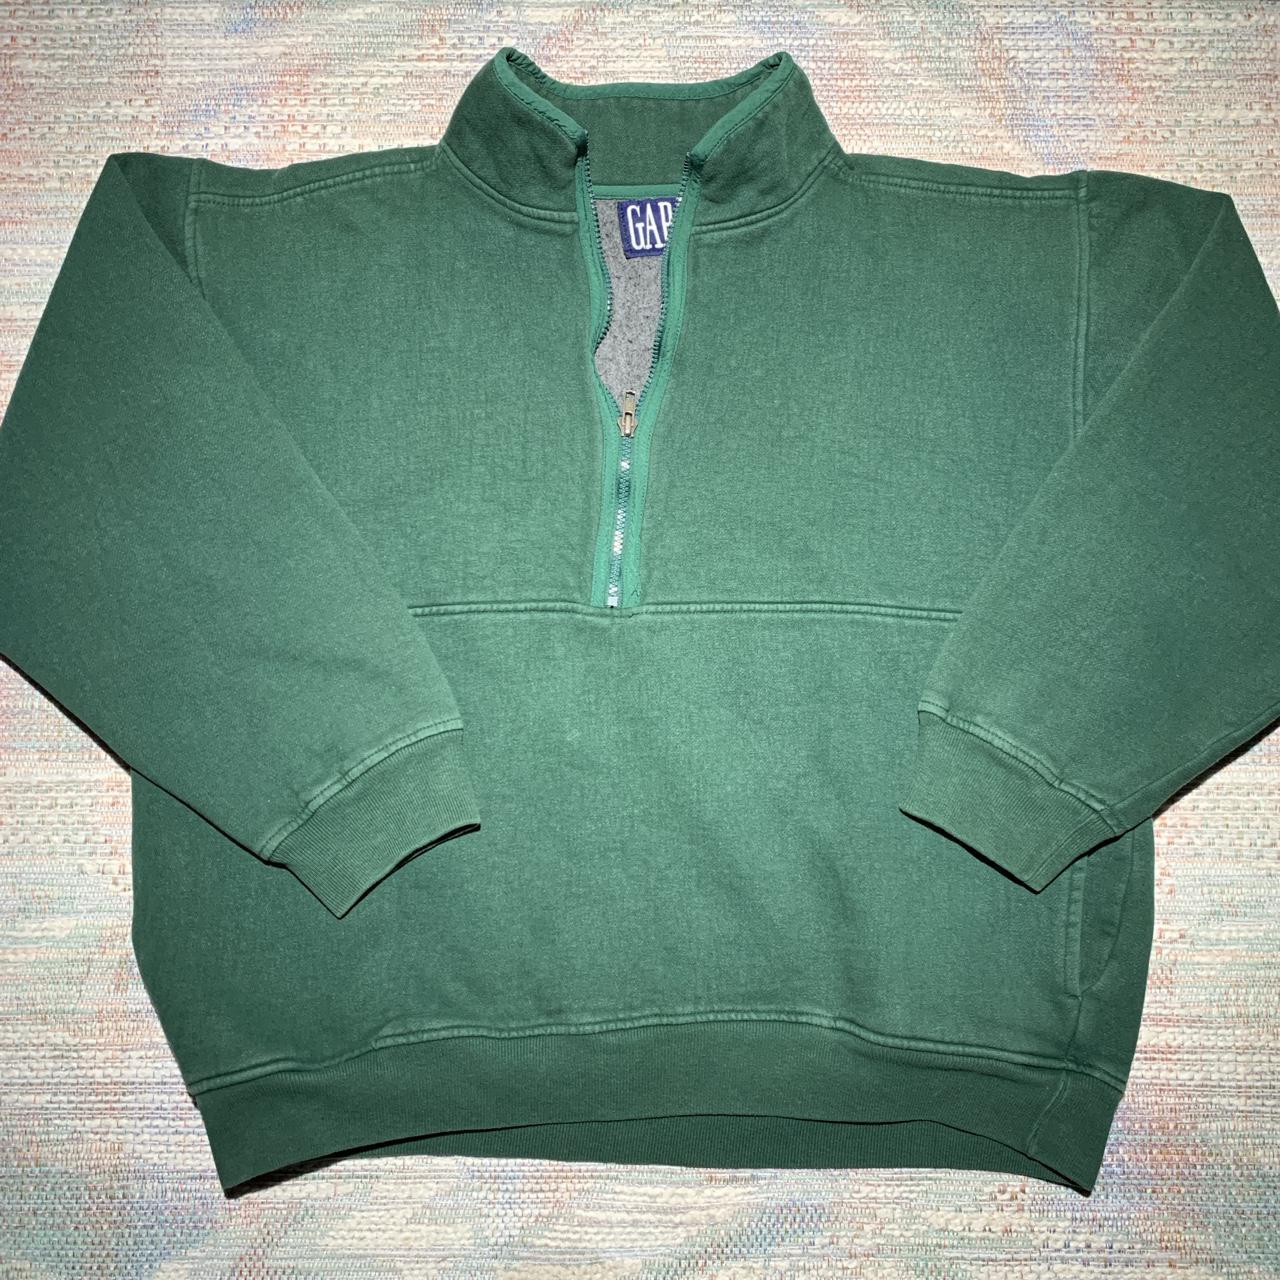 Vintage 90s Gap green half zip fleece pullover... - Depop